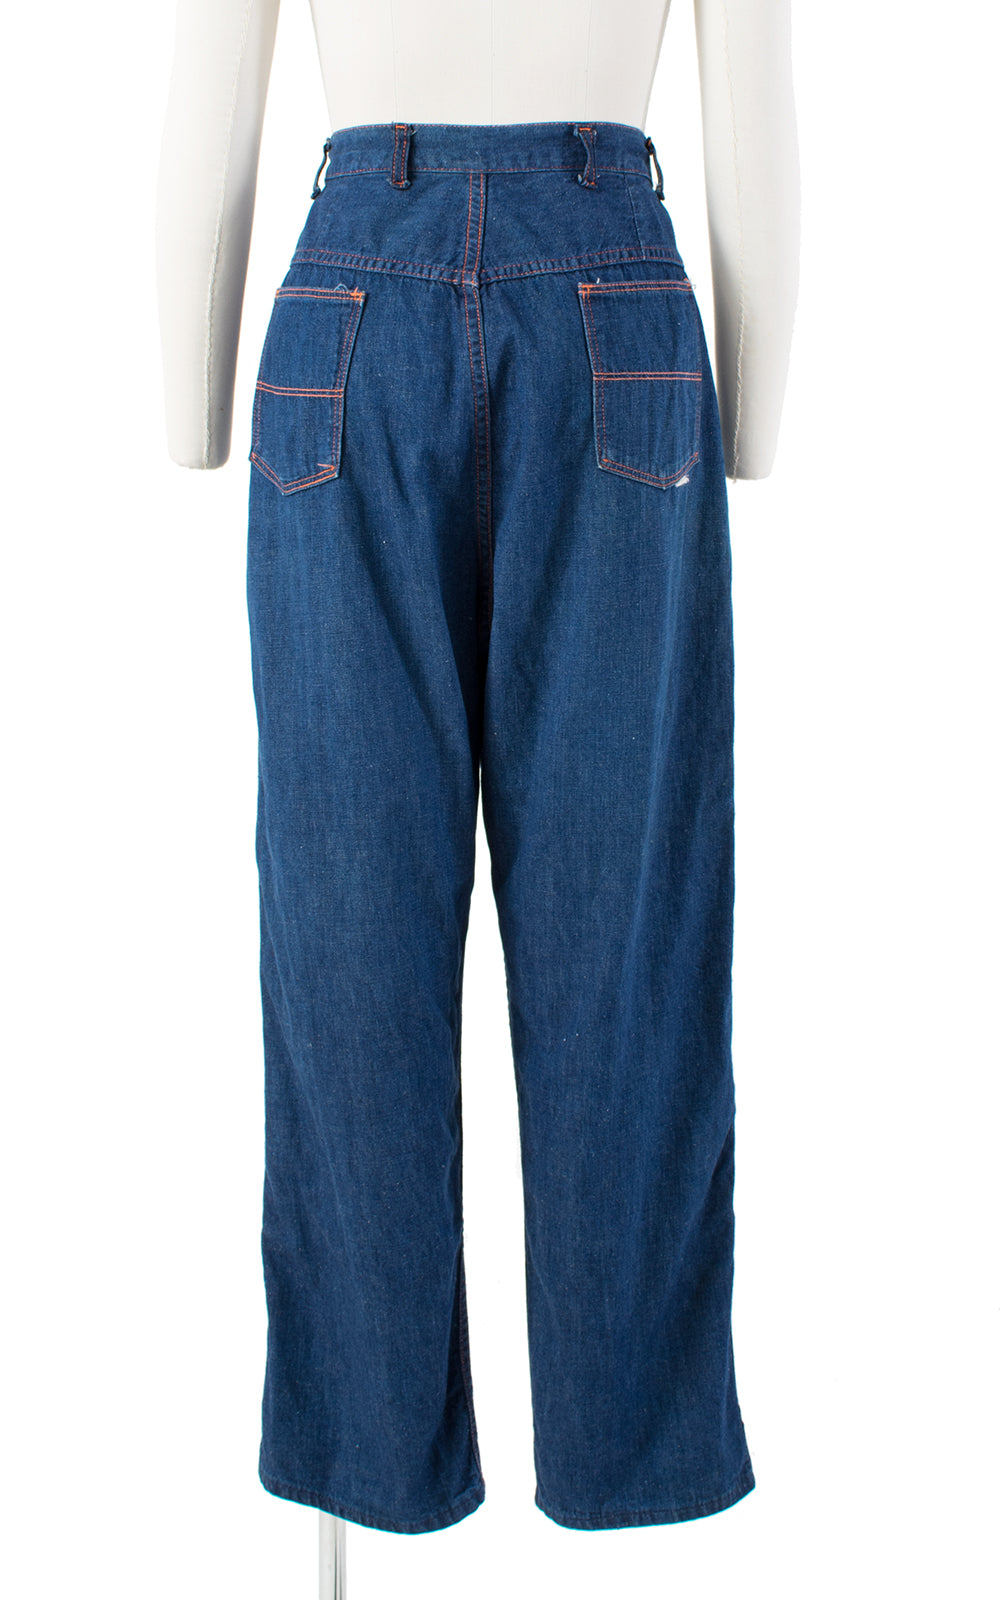 1940s Side Zipper Adjustable High Waist Blue Denim Jeans | medium ...